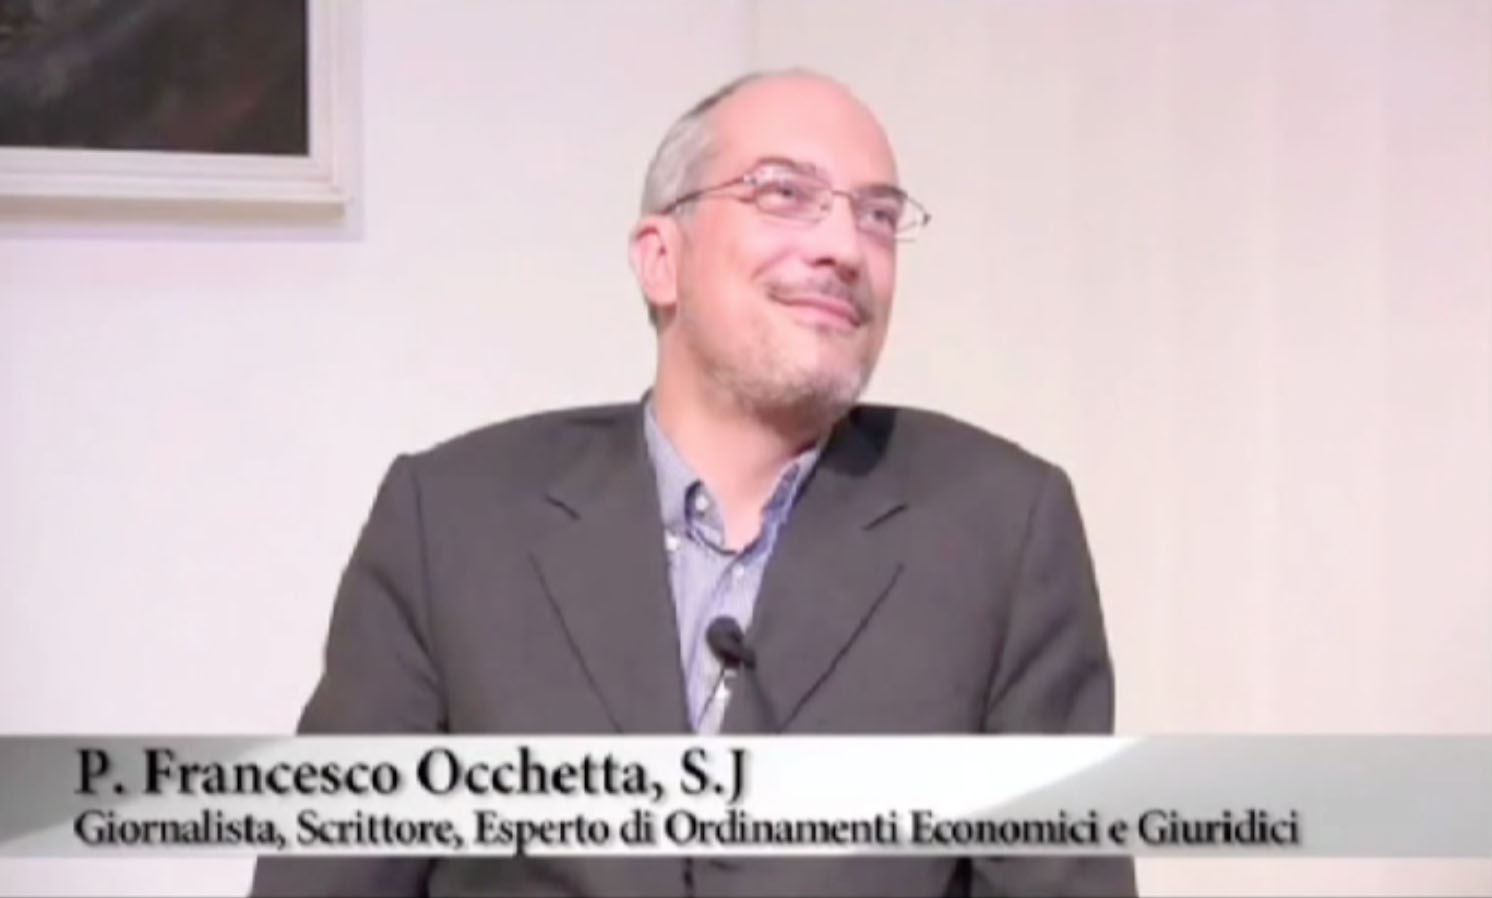 P. Francesco Occhetta S.j - Giornalista, Scrittore, Esperto di Ordinamenti Economici e Giuridici